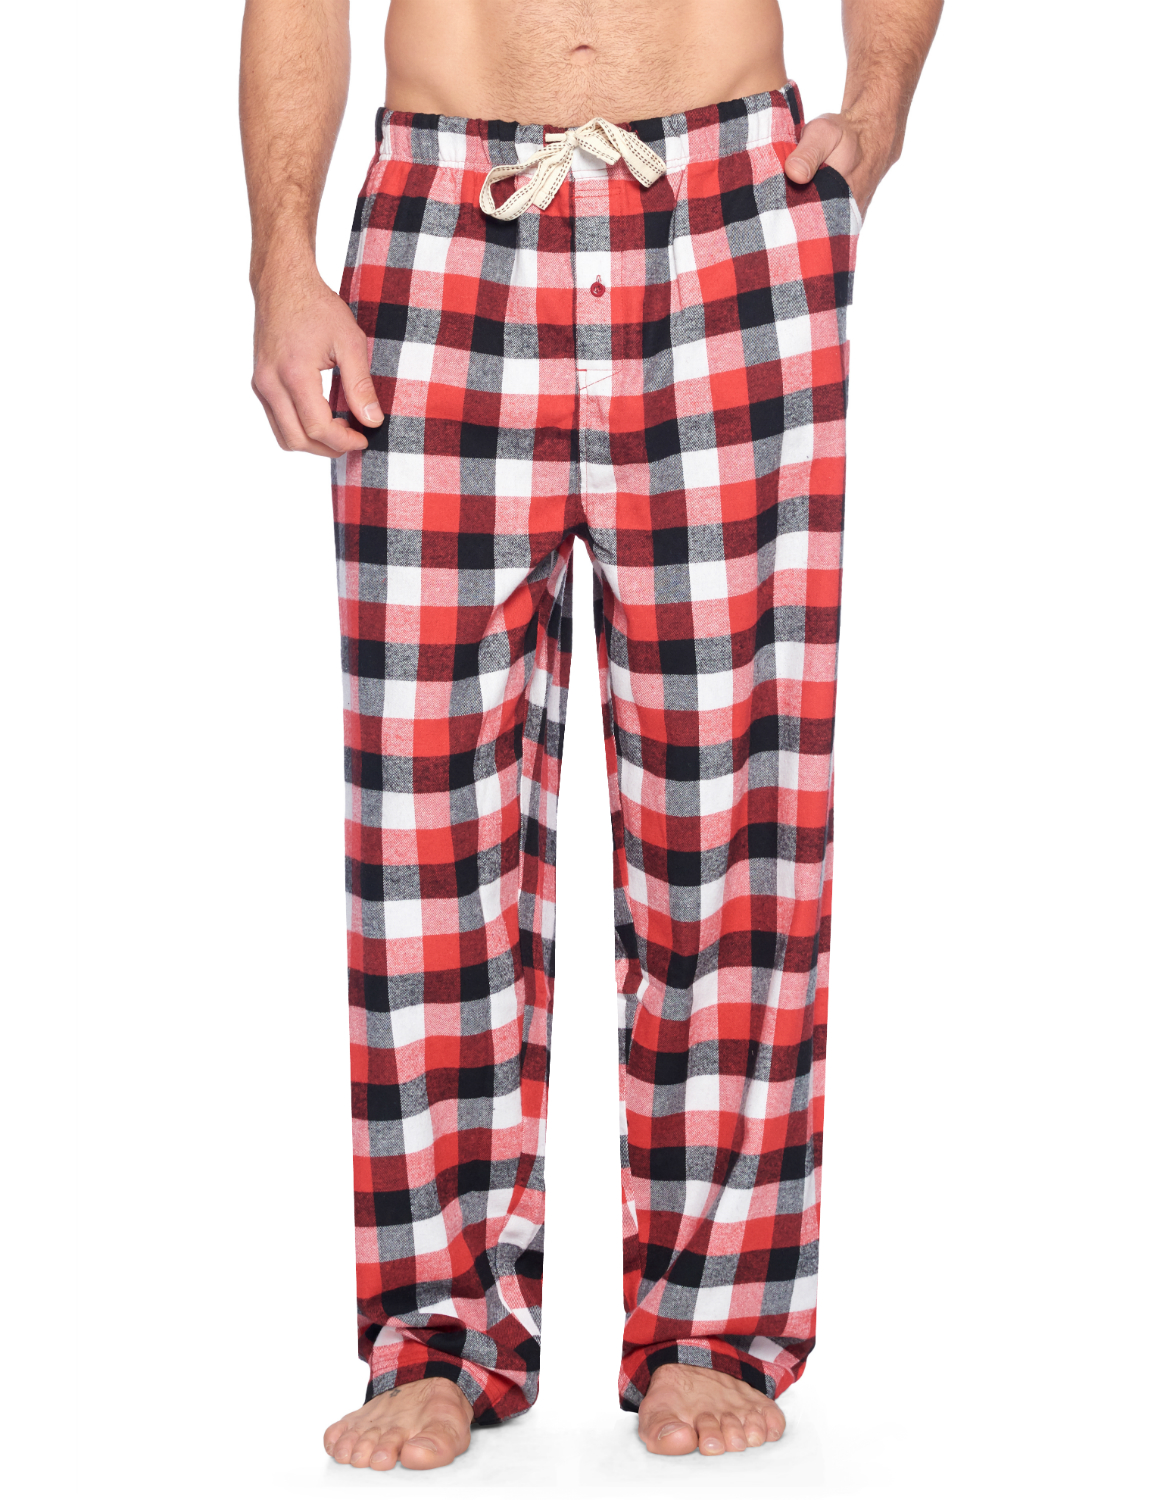 Ashford & Brooks Mens Super Soft Flannel Plaid Pajama Sleep Pants - Red White Black Check 